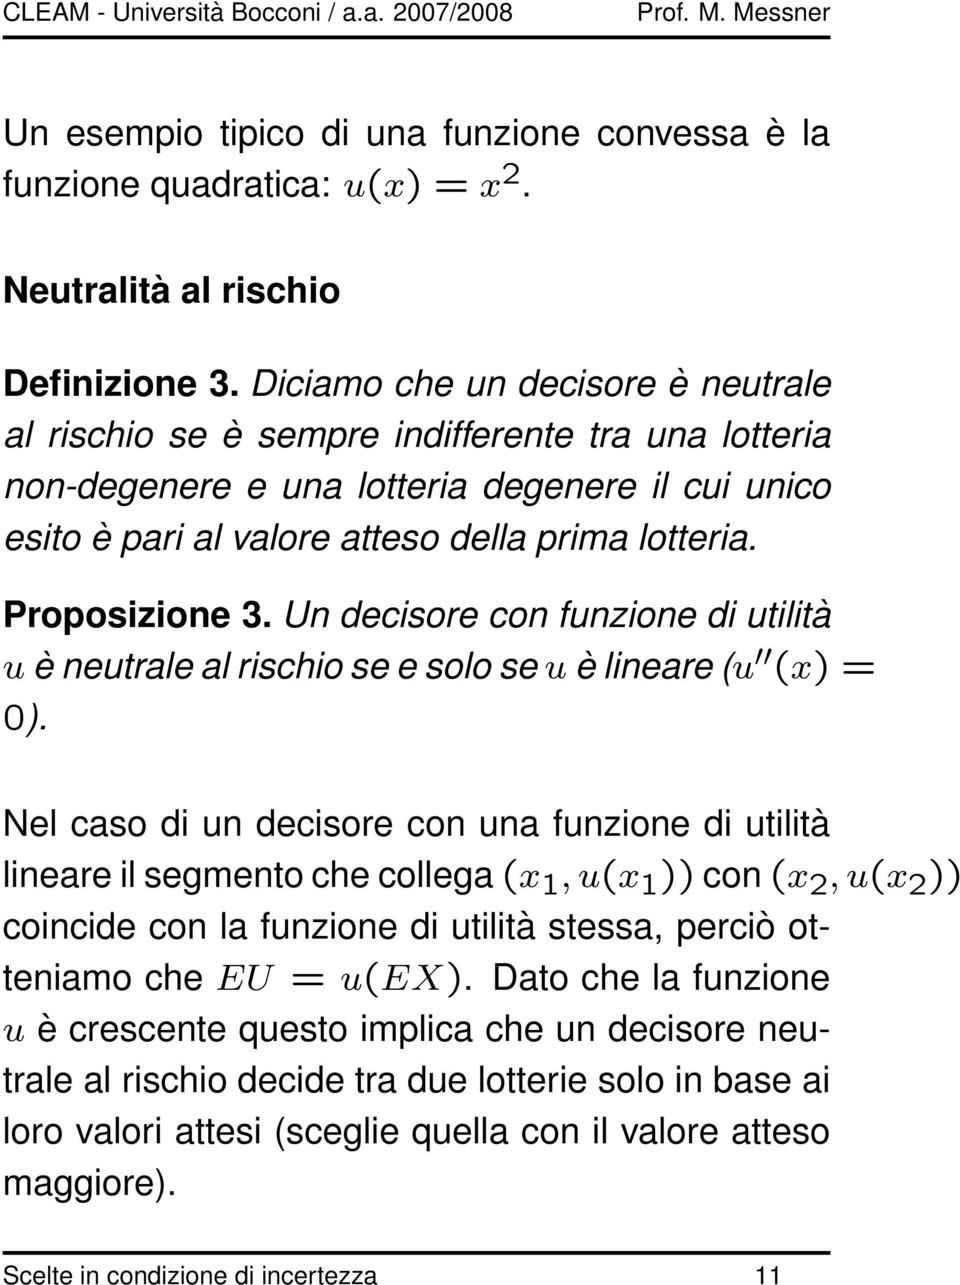 Proposizione 3. Un decisore con funzione di utilità u è neutrale al rischio se e solo se u è lineare (u (x) = 0).